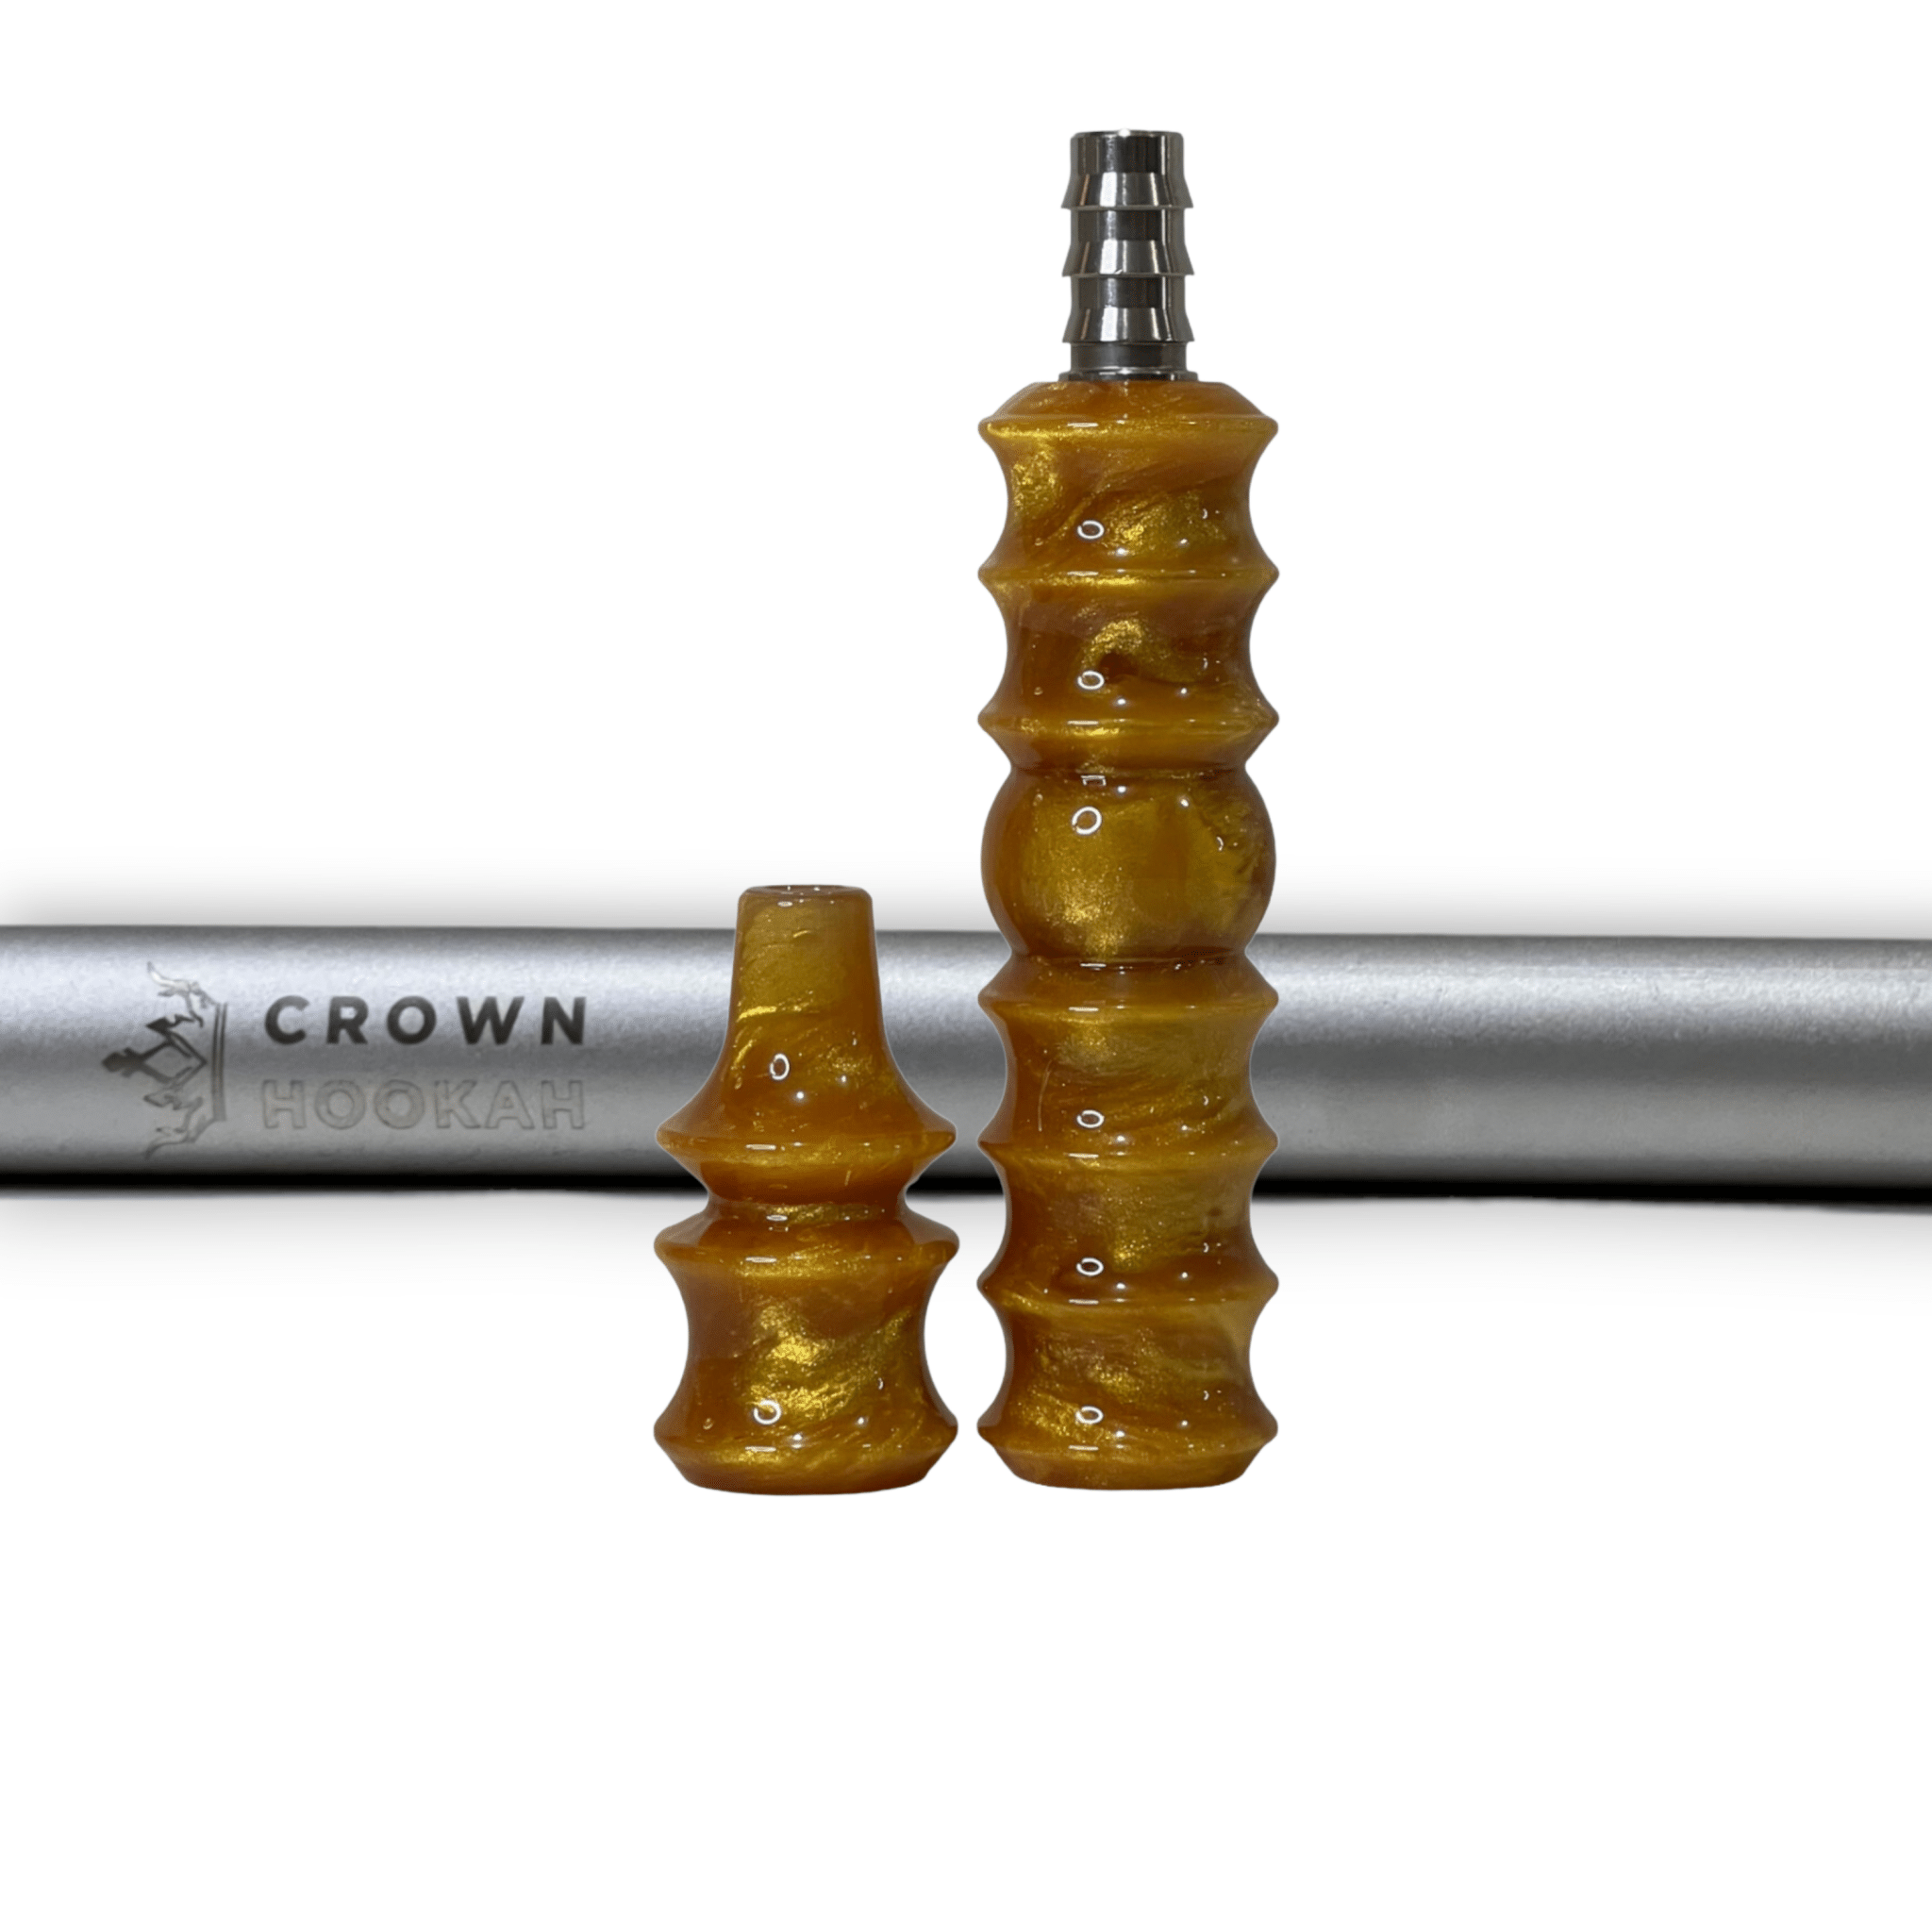 CH Premium Mouthpiece Complete Set - Golden Sands - Matte Silver - Crown Hookah